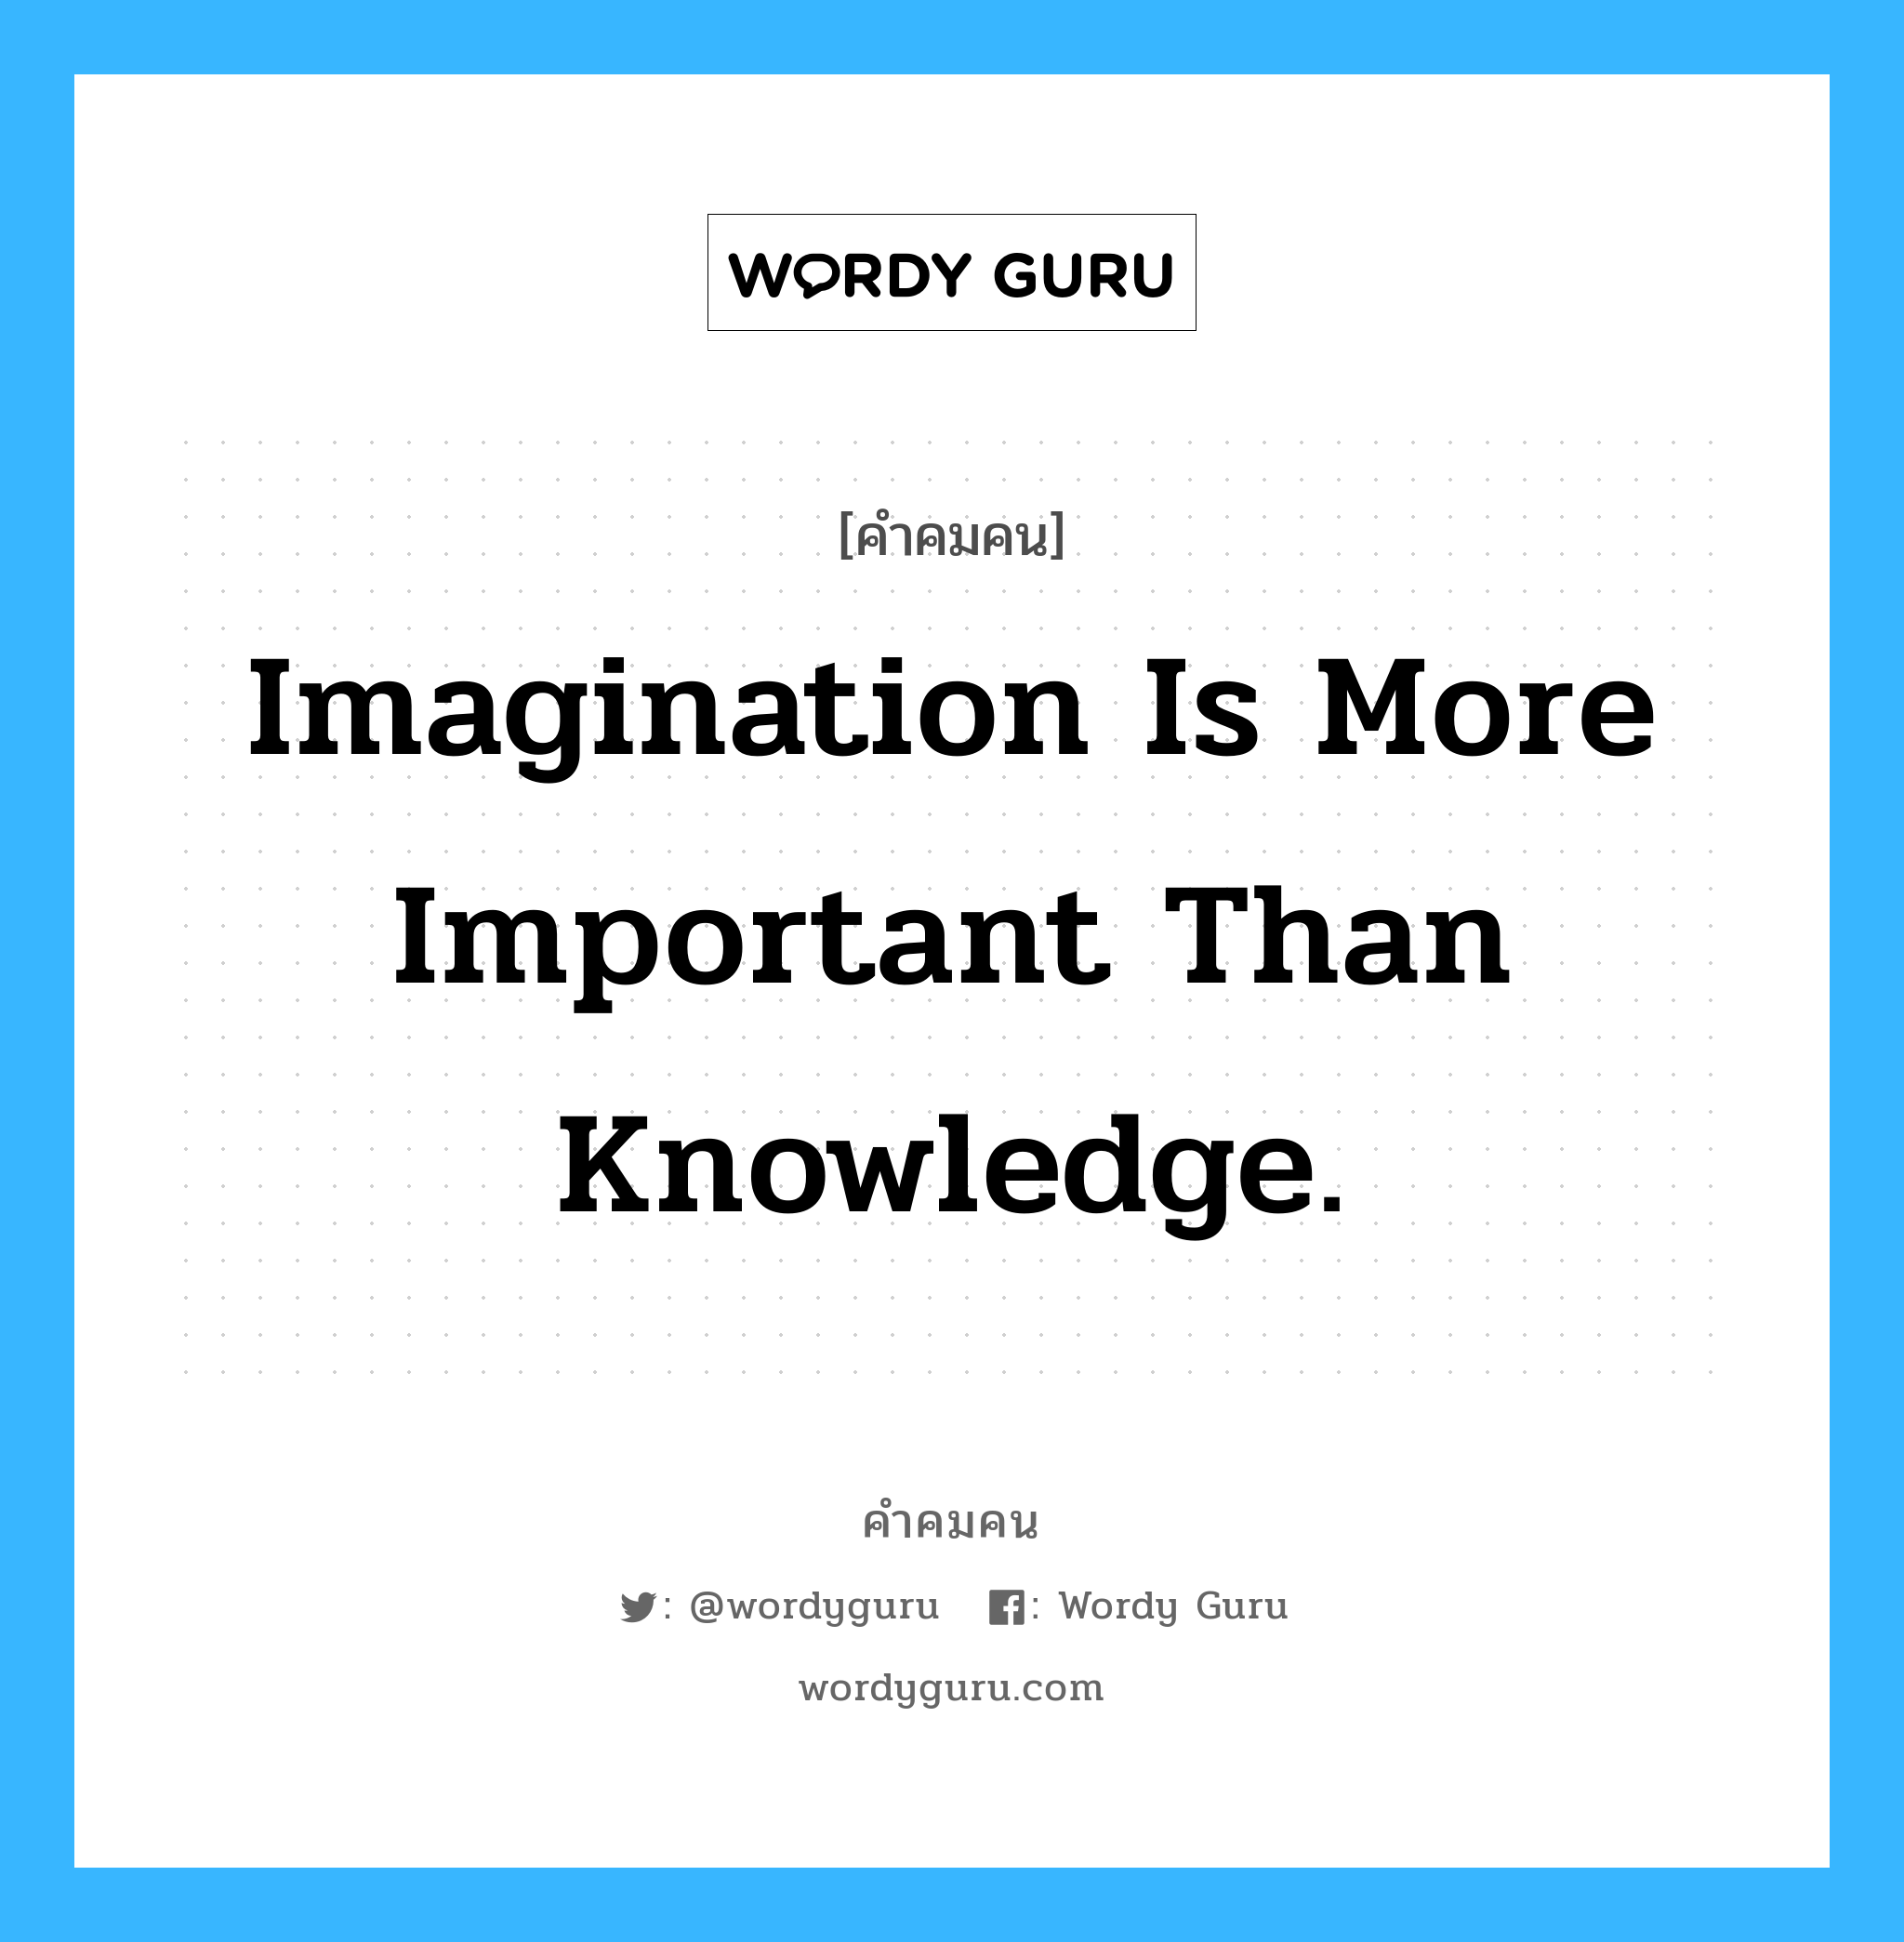 Imagination is more important than knowledge. อยู่ในกลุ่มประเภท Albert Einstein, คำคมคน Imagination is more important than knowledge. จินตนาการสำคัญกว่าความรู้ที่มี Albert Einstein หมวด Albert Einstein